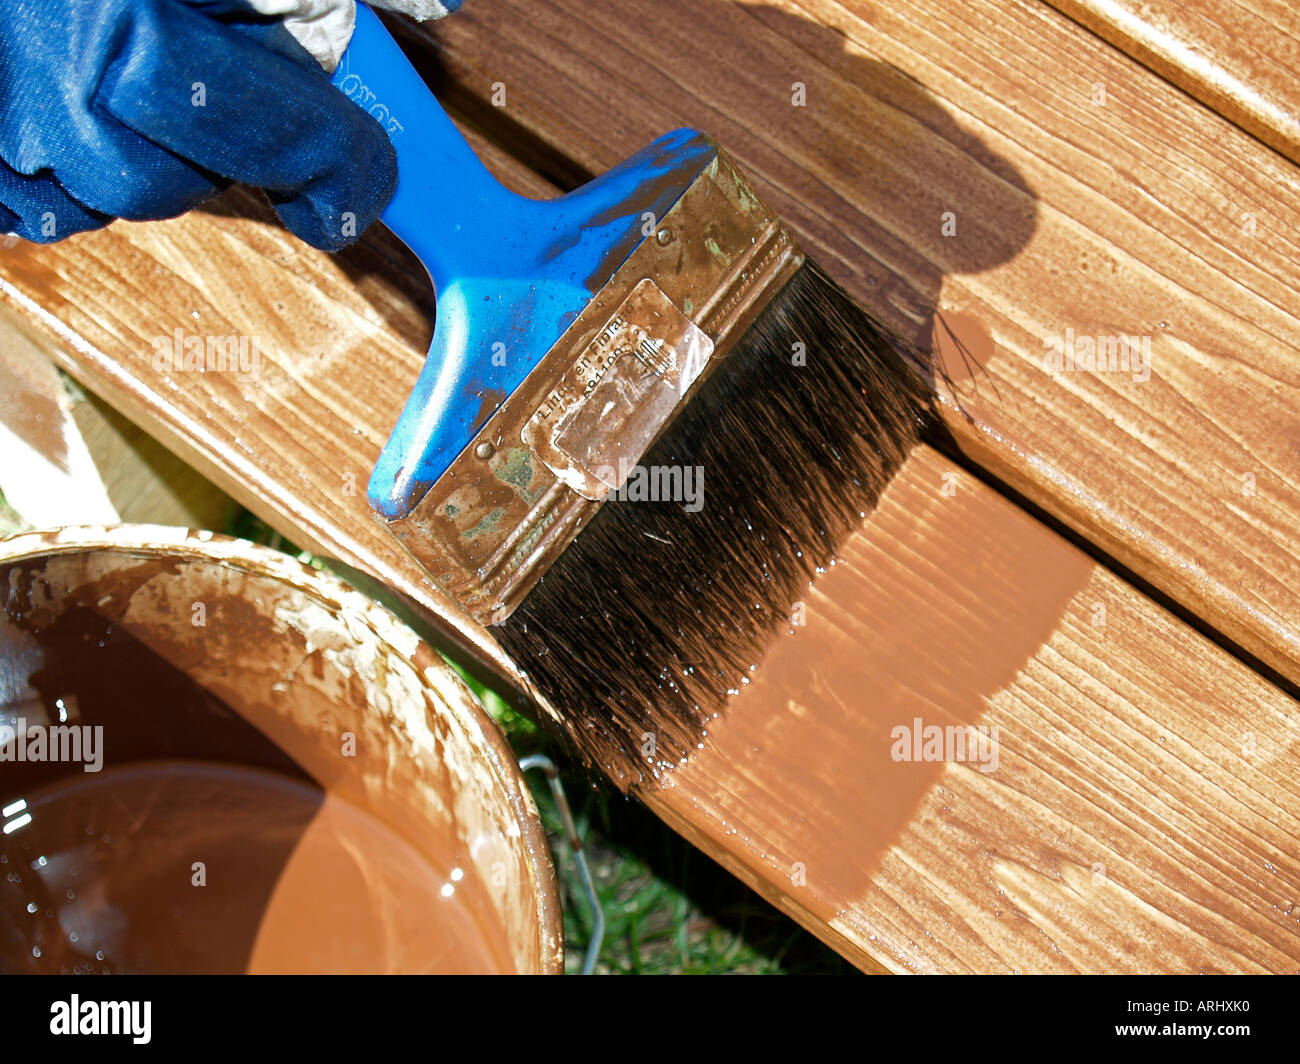 Il trattamento del legno con rivestimento protettivo di una spazzola di vernice della pittura con doghe in legno Foto Stock